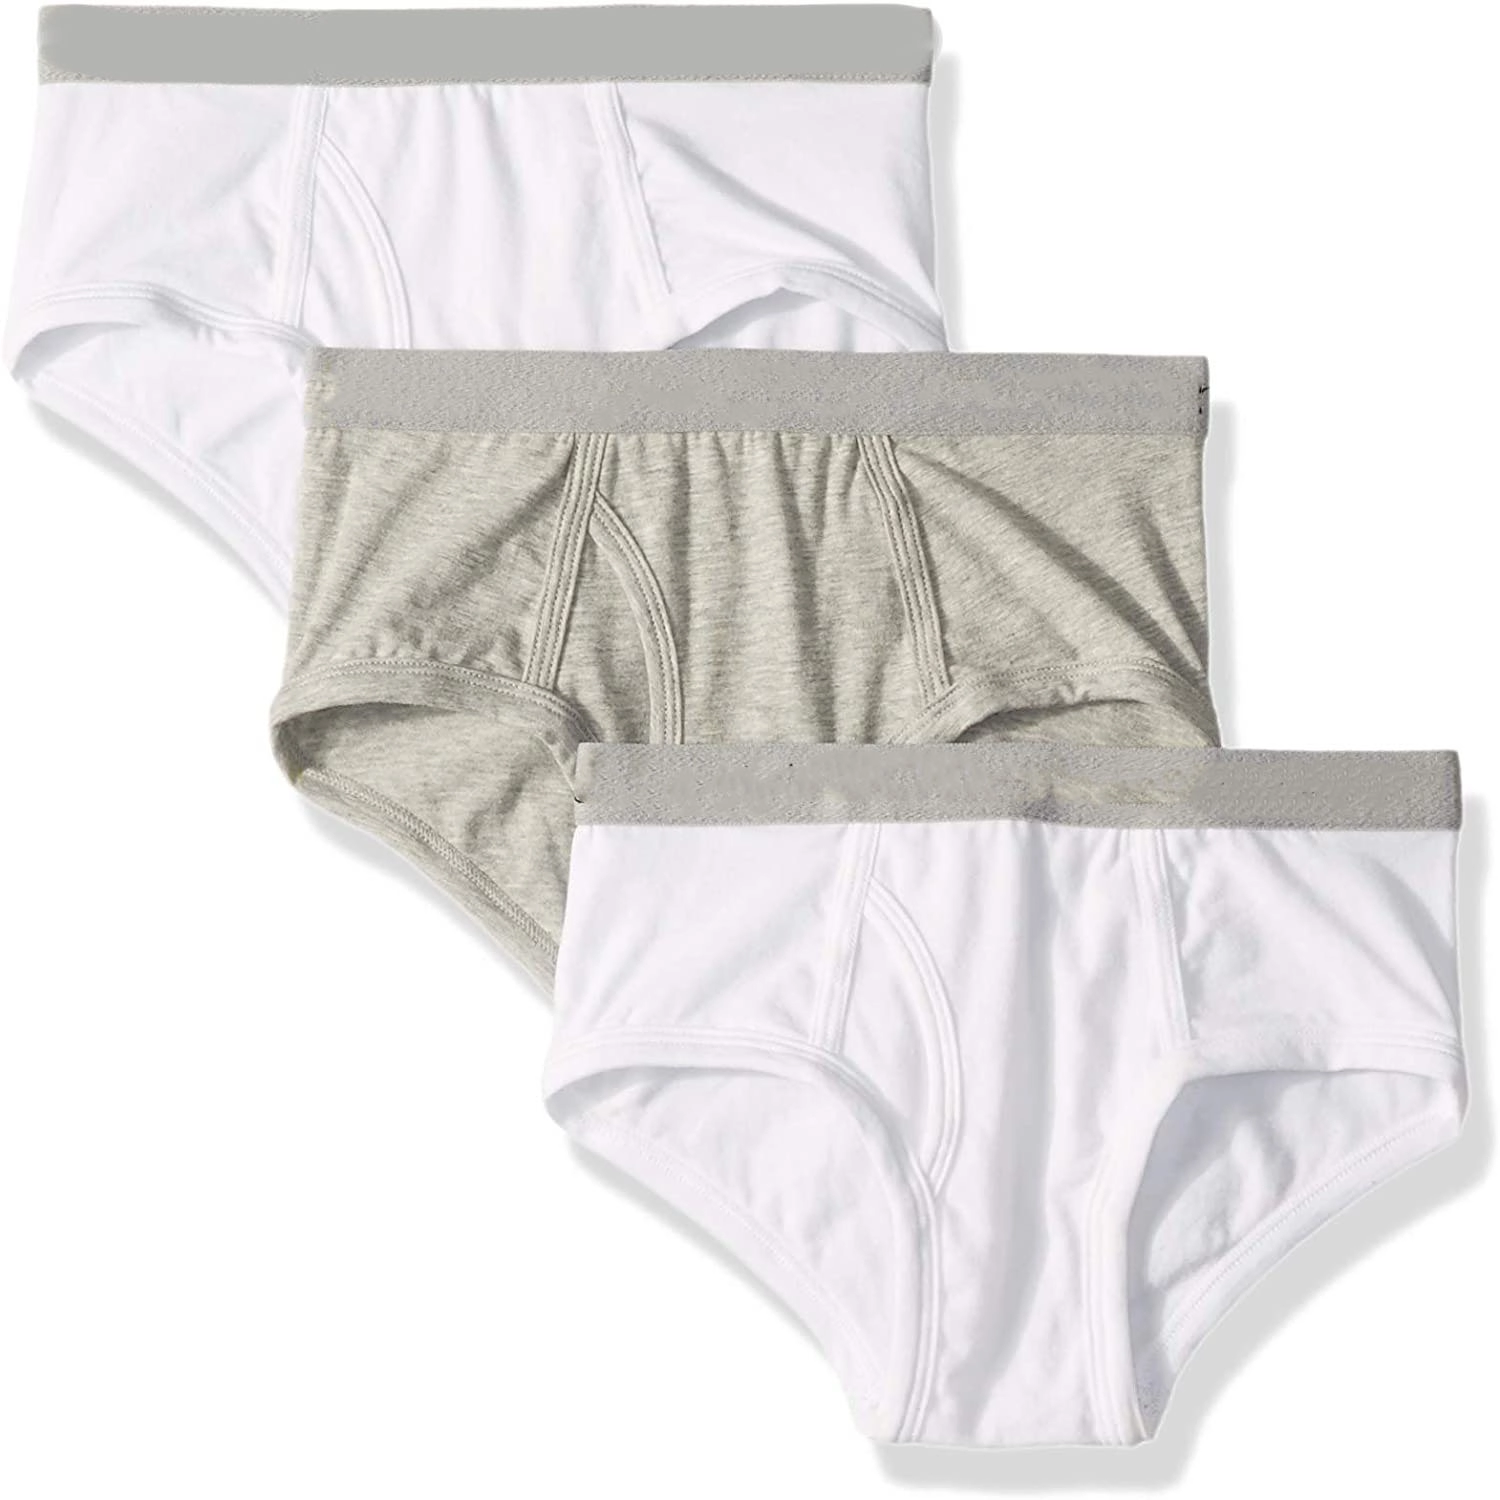 Boys' Kids Modern Cotton Assorted Briefs Underwear